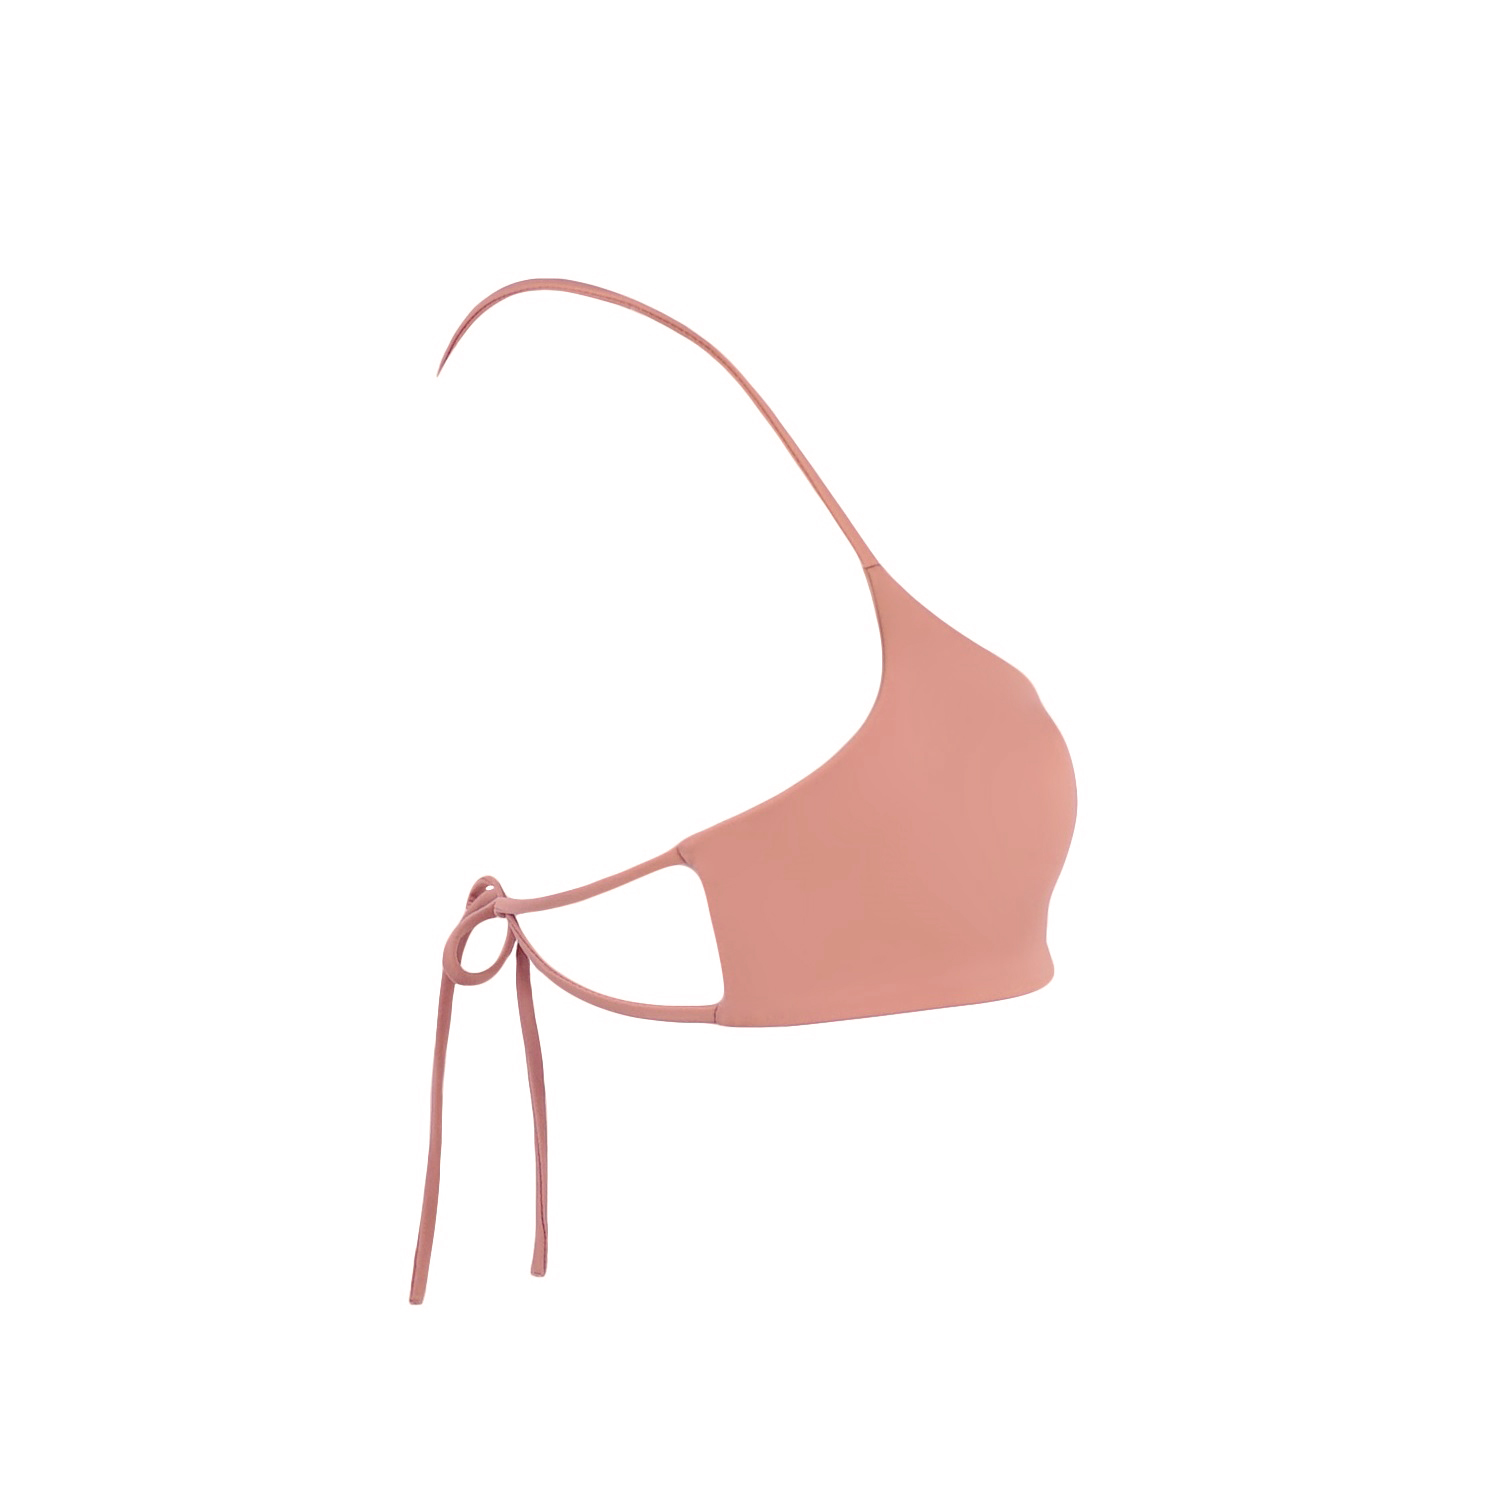 acaia-top-bikini-tied-góra-rose różowy pudrowy brzoskwiniowy łososiowy -długie-paseczki-sznureczki-kokardki-bikini-acaia- polska marka swimwear bikini top bottom brazilian rose pink peach 4